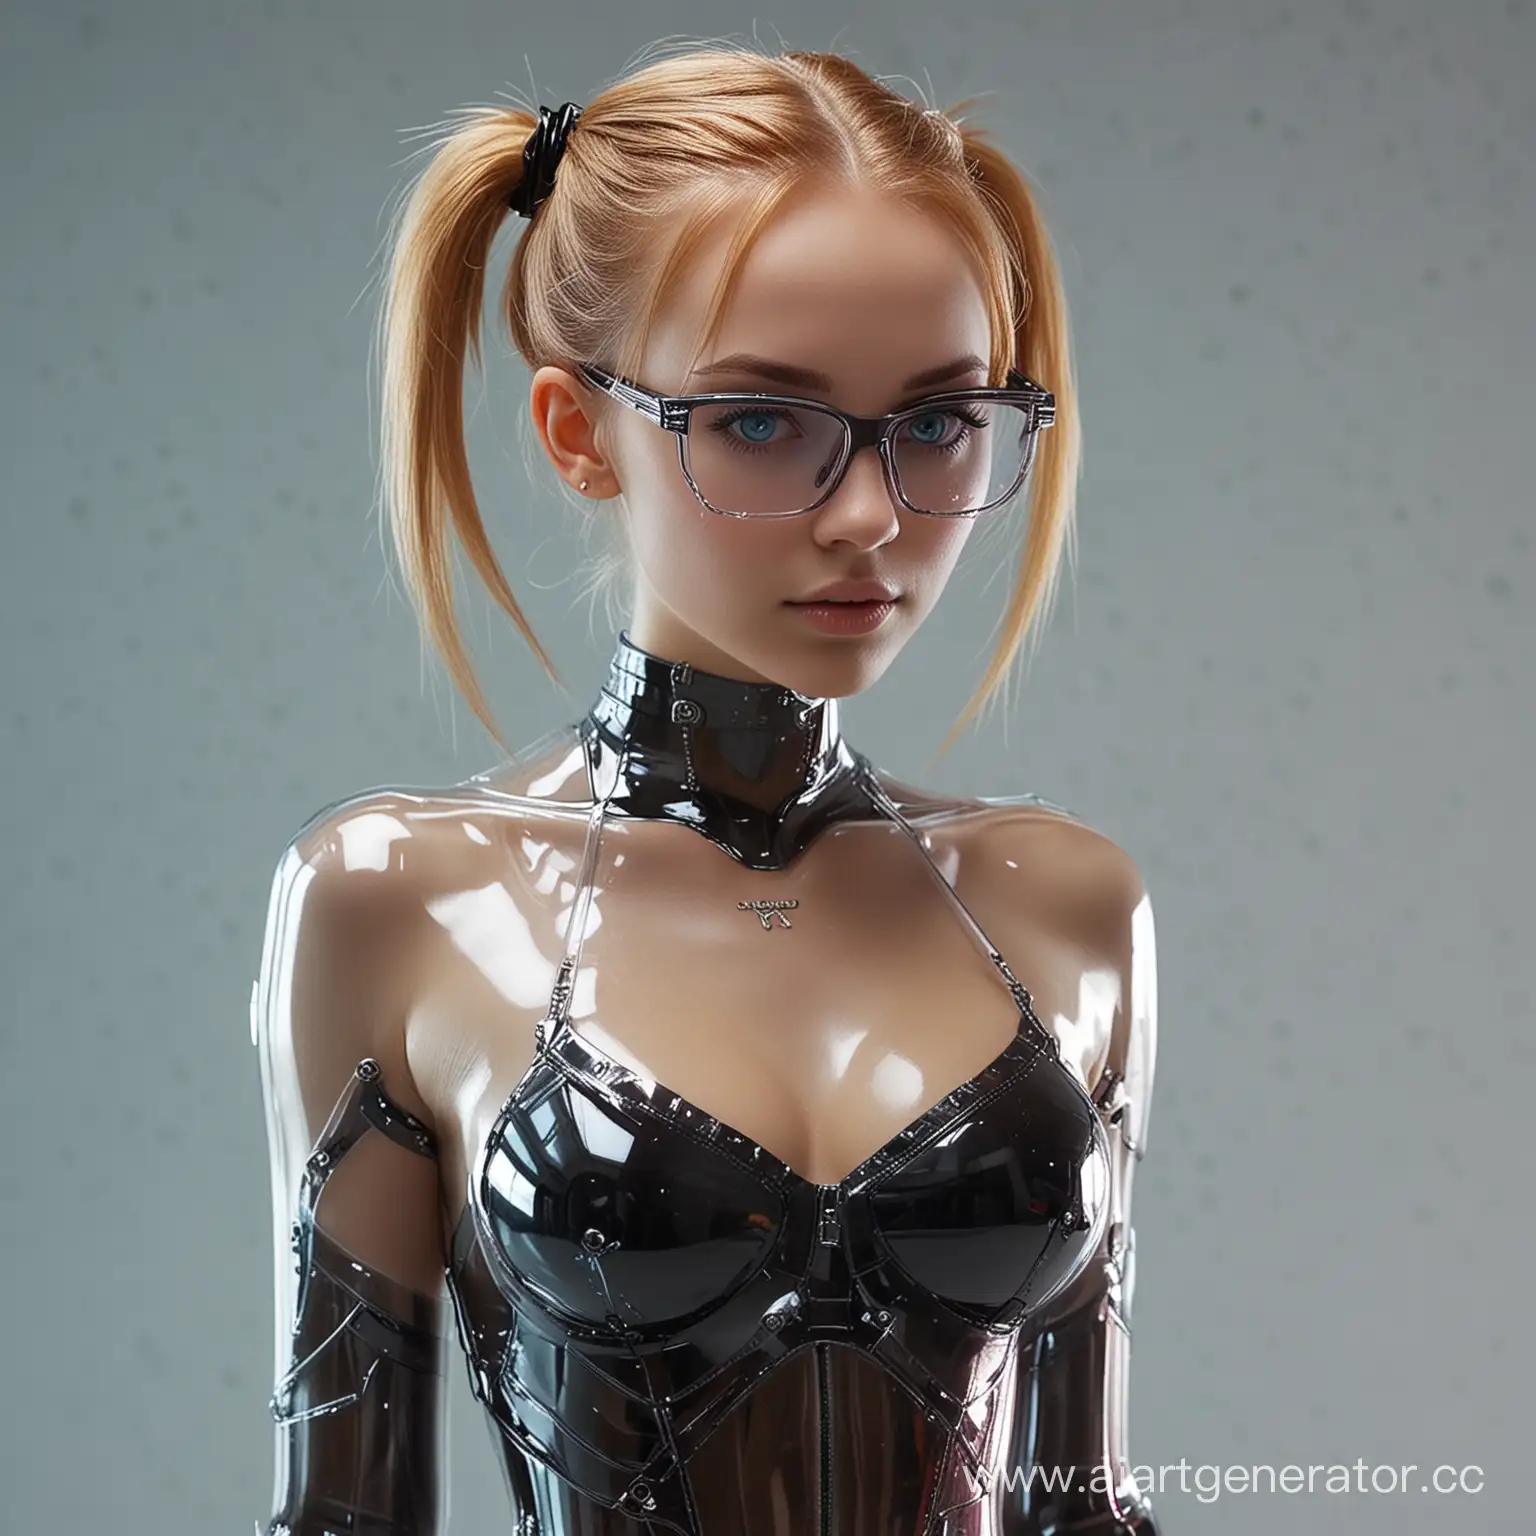 Futuristic-Cyberpunk-Girl-Trapped-in-Glass-Enclosure